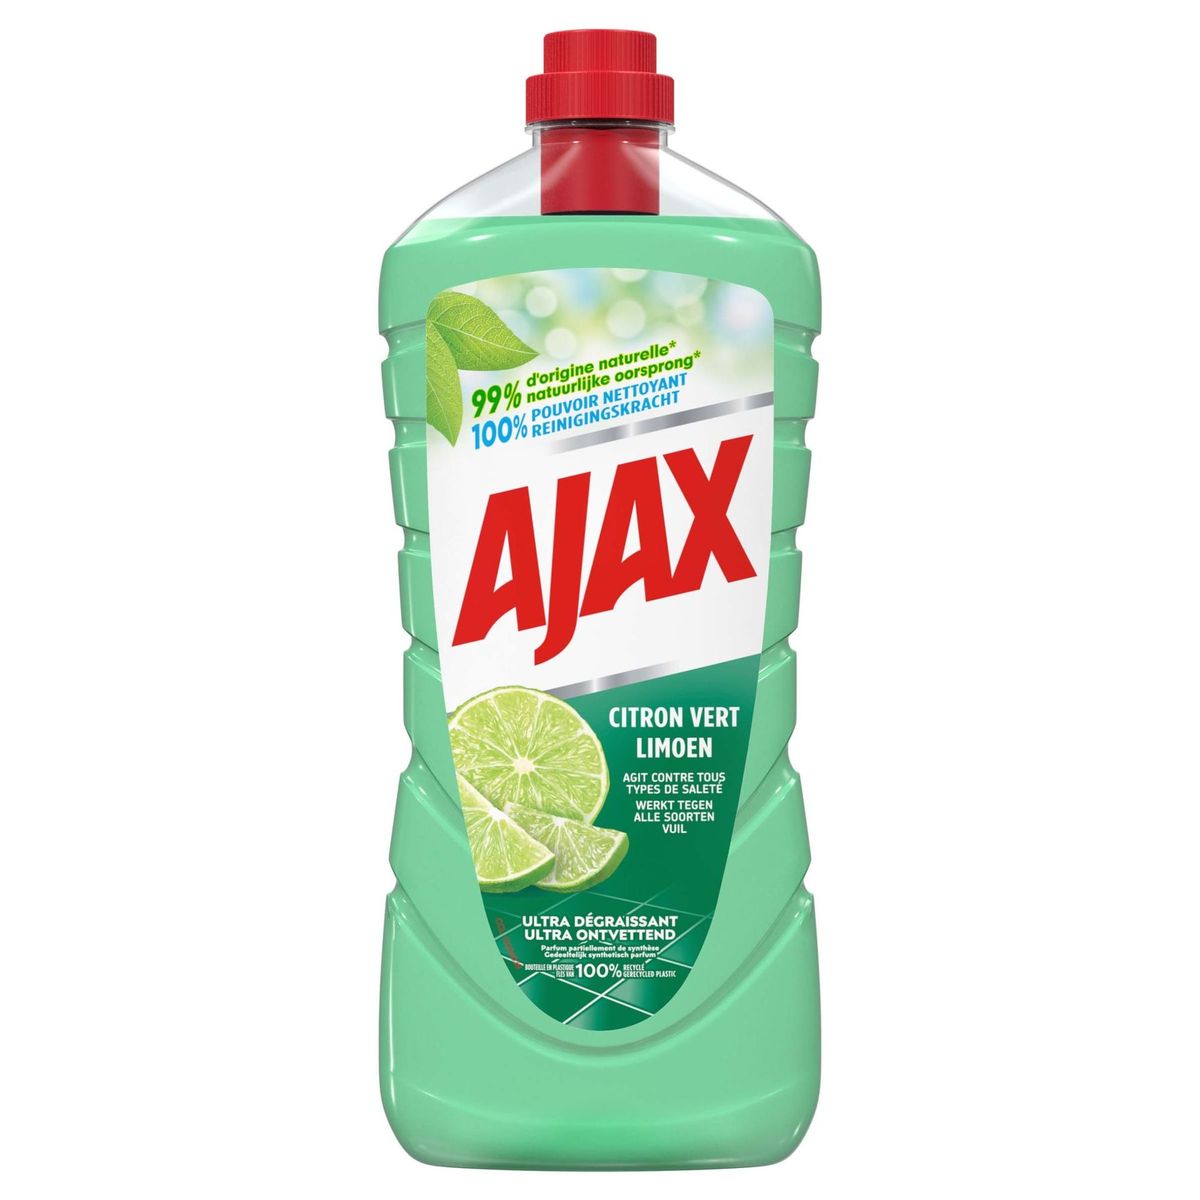 Ajax Limoen allesreiniger - 1.25L